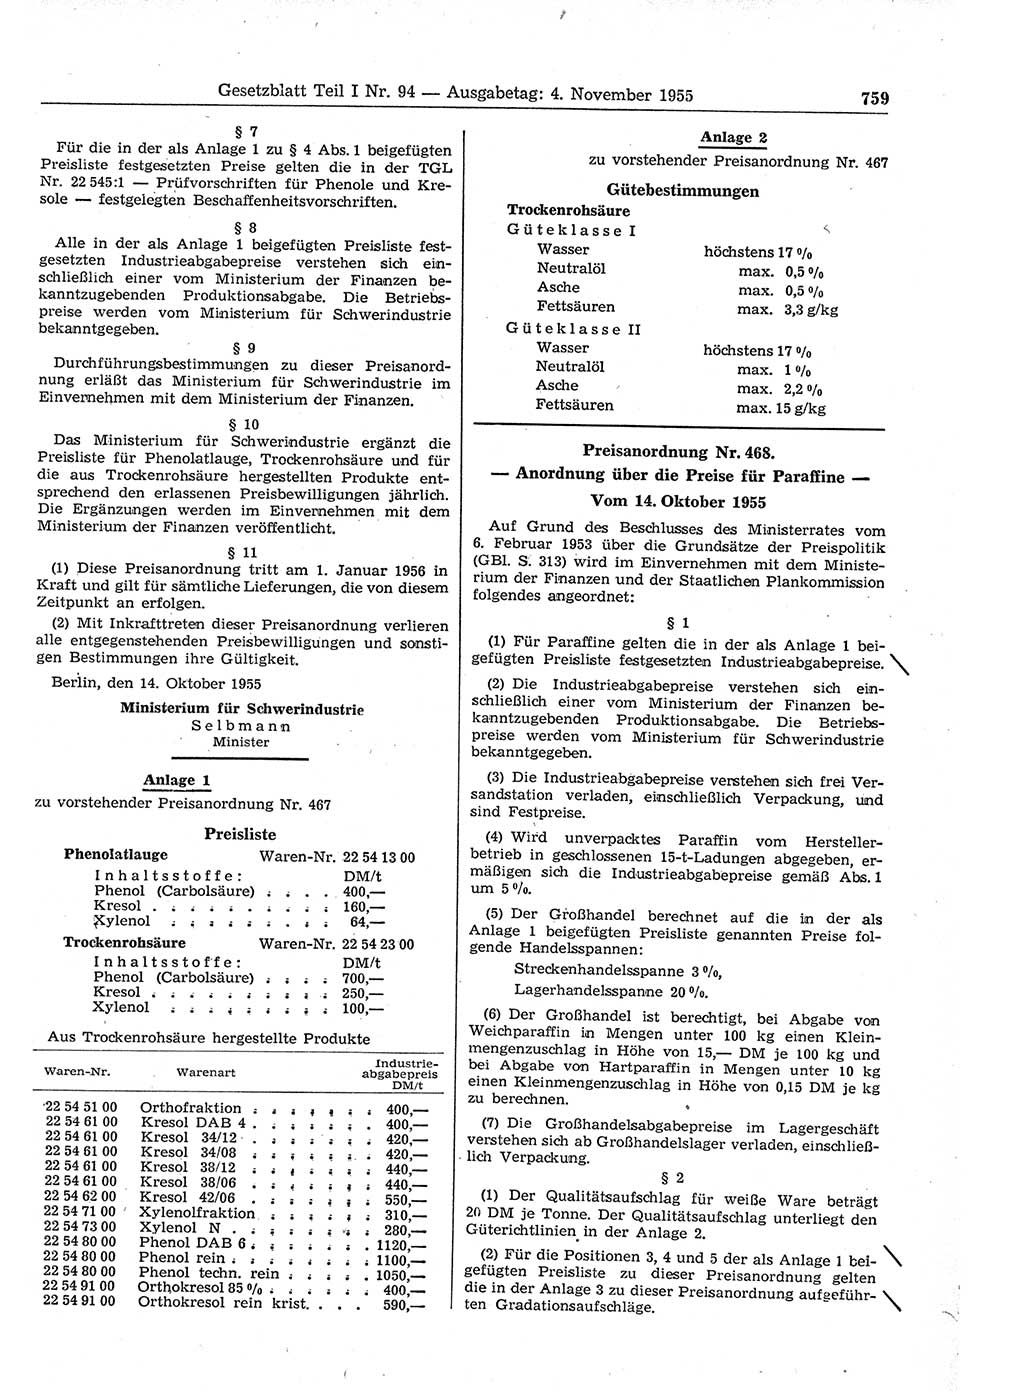 Gesetzblatt (GBl.) der Deutschen Demokratischen Republik (DDR) Teil Ⅰ 1955, Seite 759 (GBl. DDR Ⅰ 1955, S. 759)